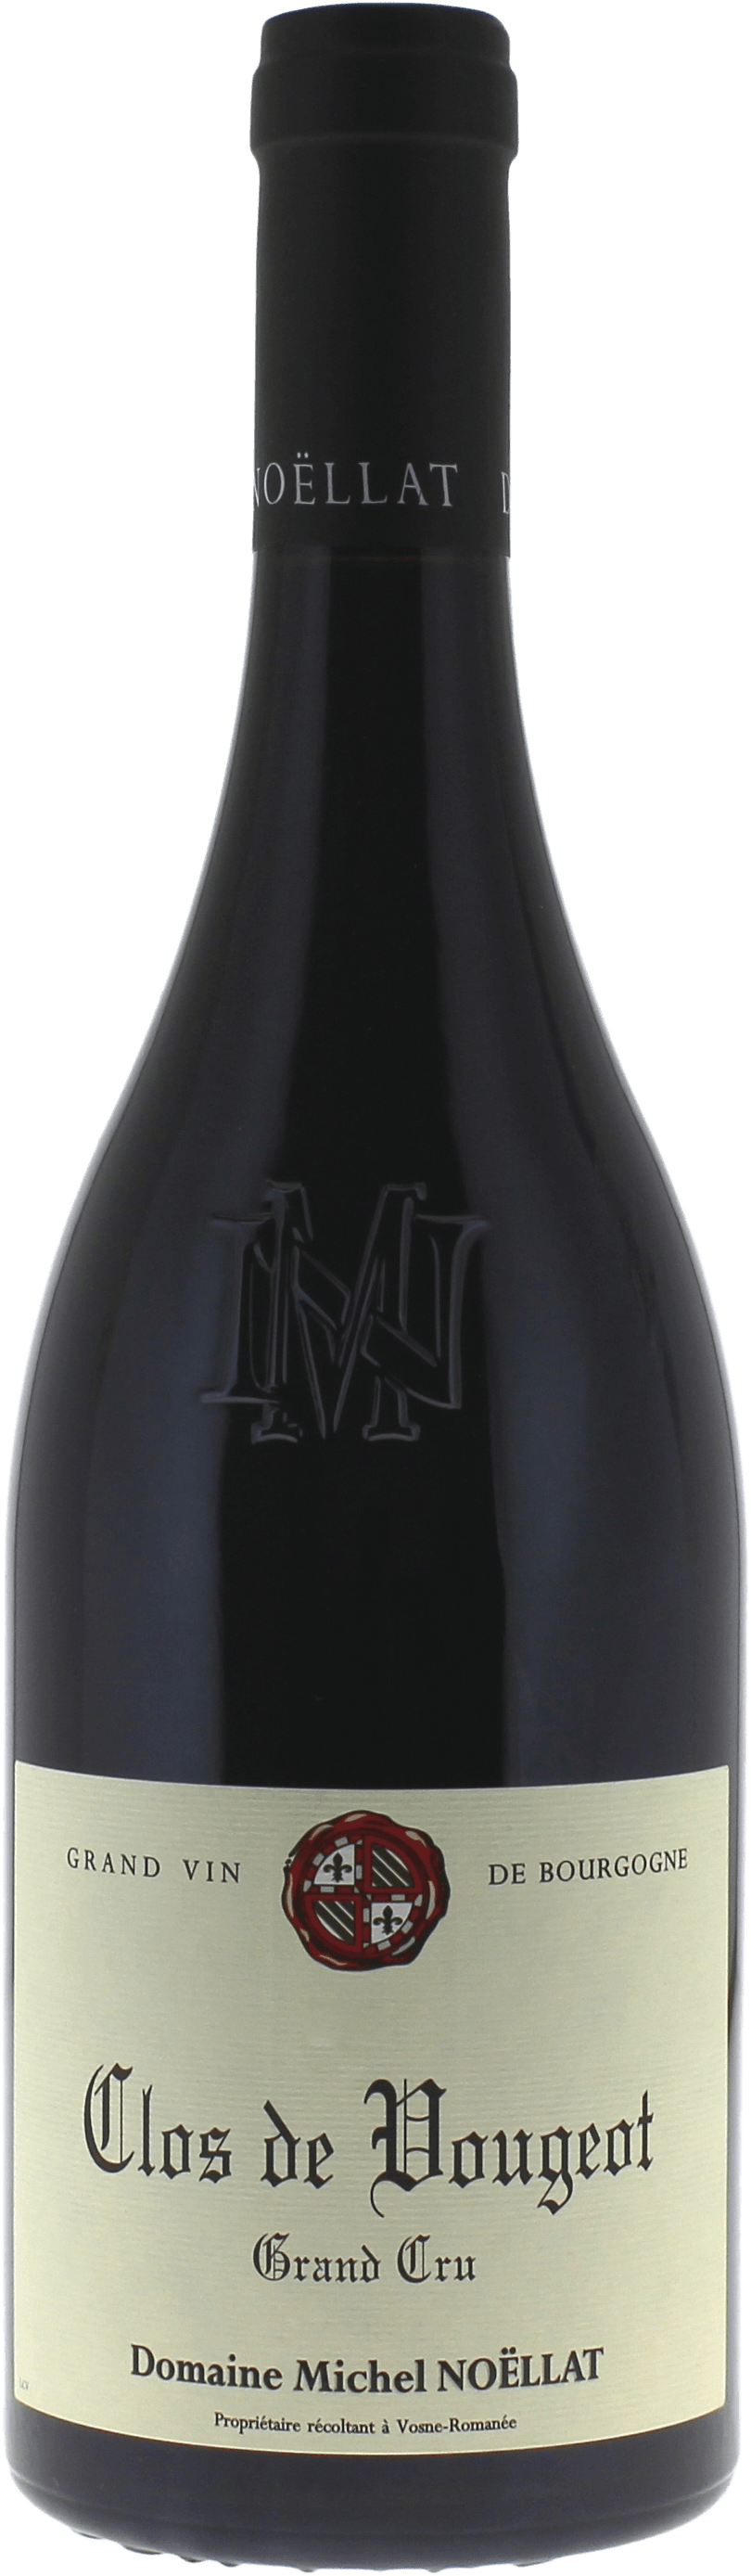 Clos de vougeot grand cru 2019 Domaine NOELLAT Michel, Bourgogne rouge